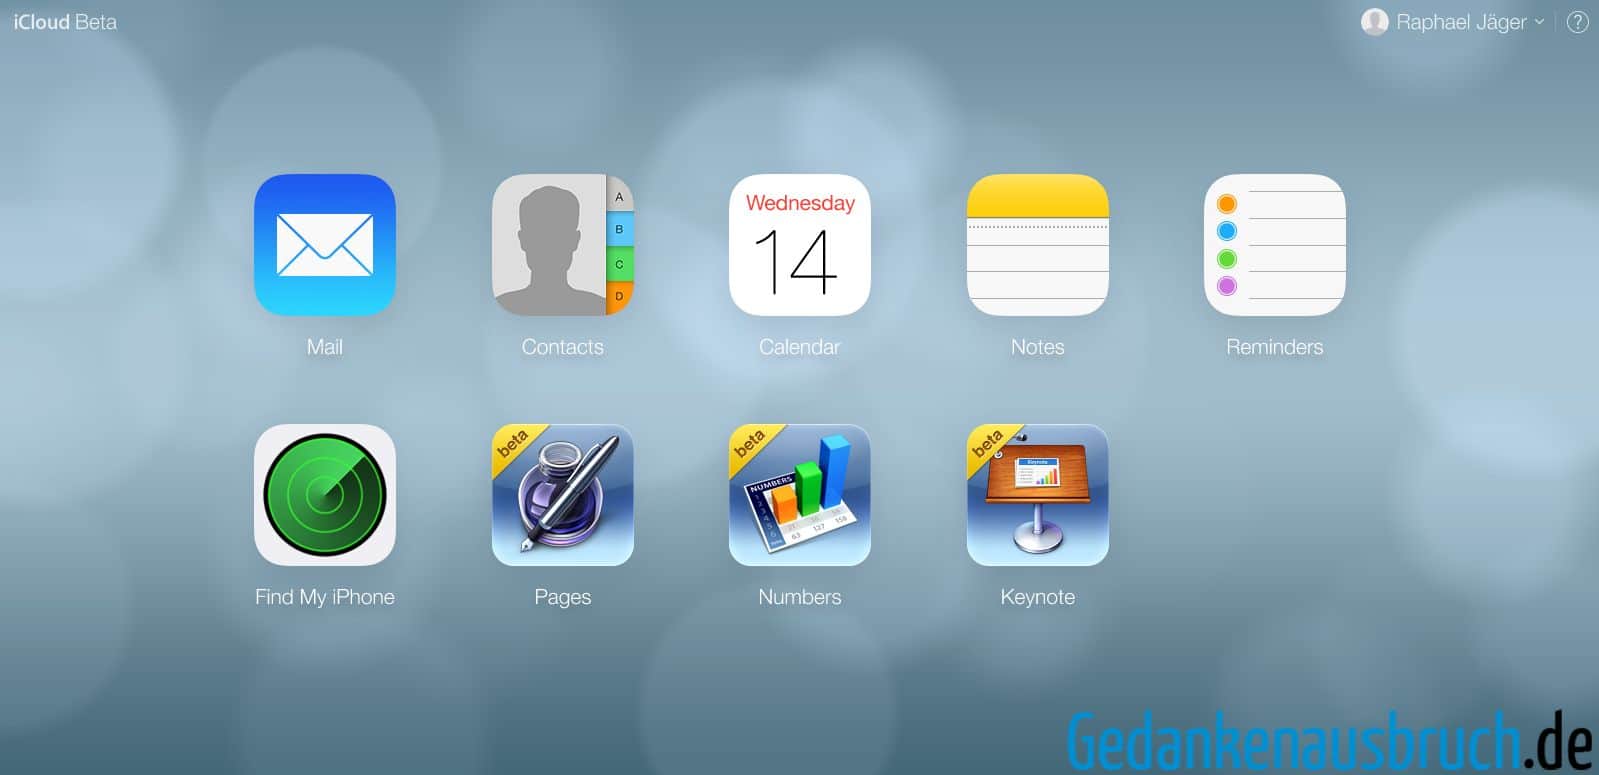 iCloud Beta - iOS 7